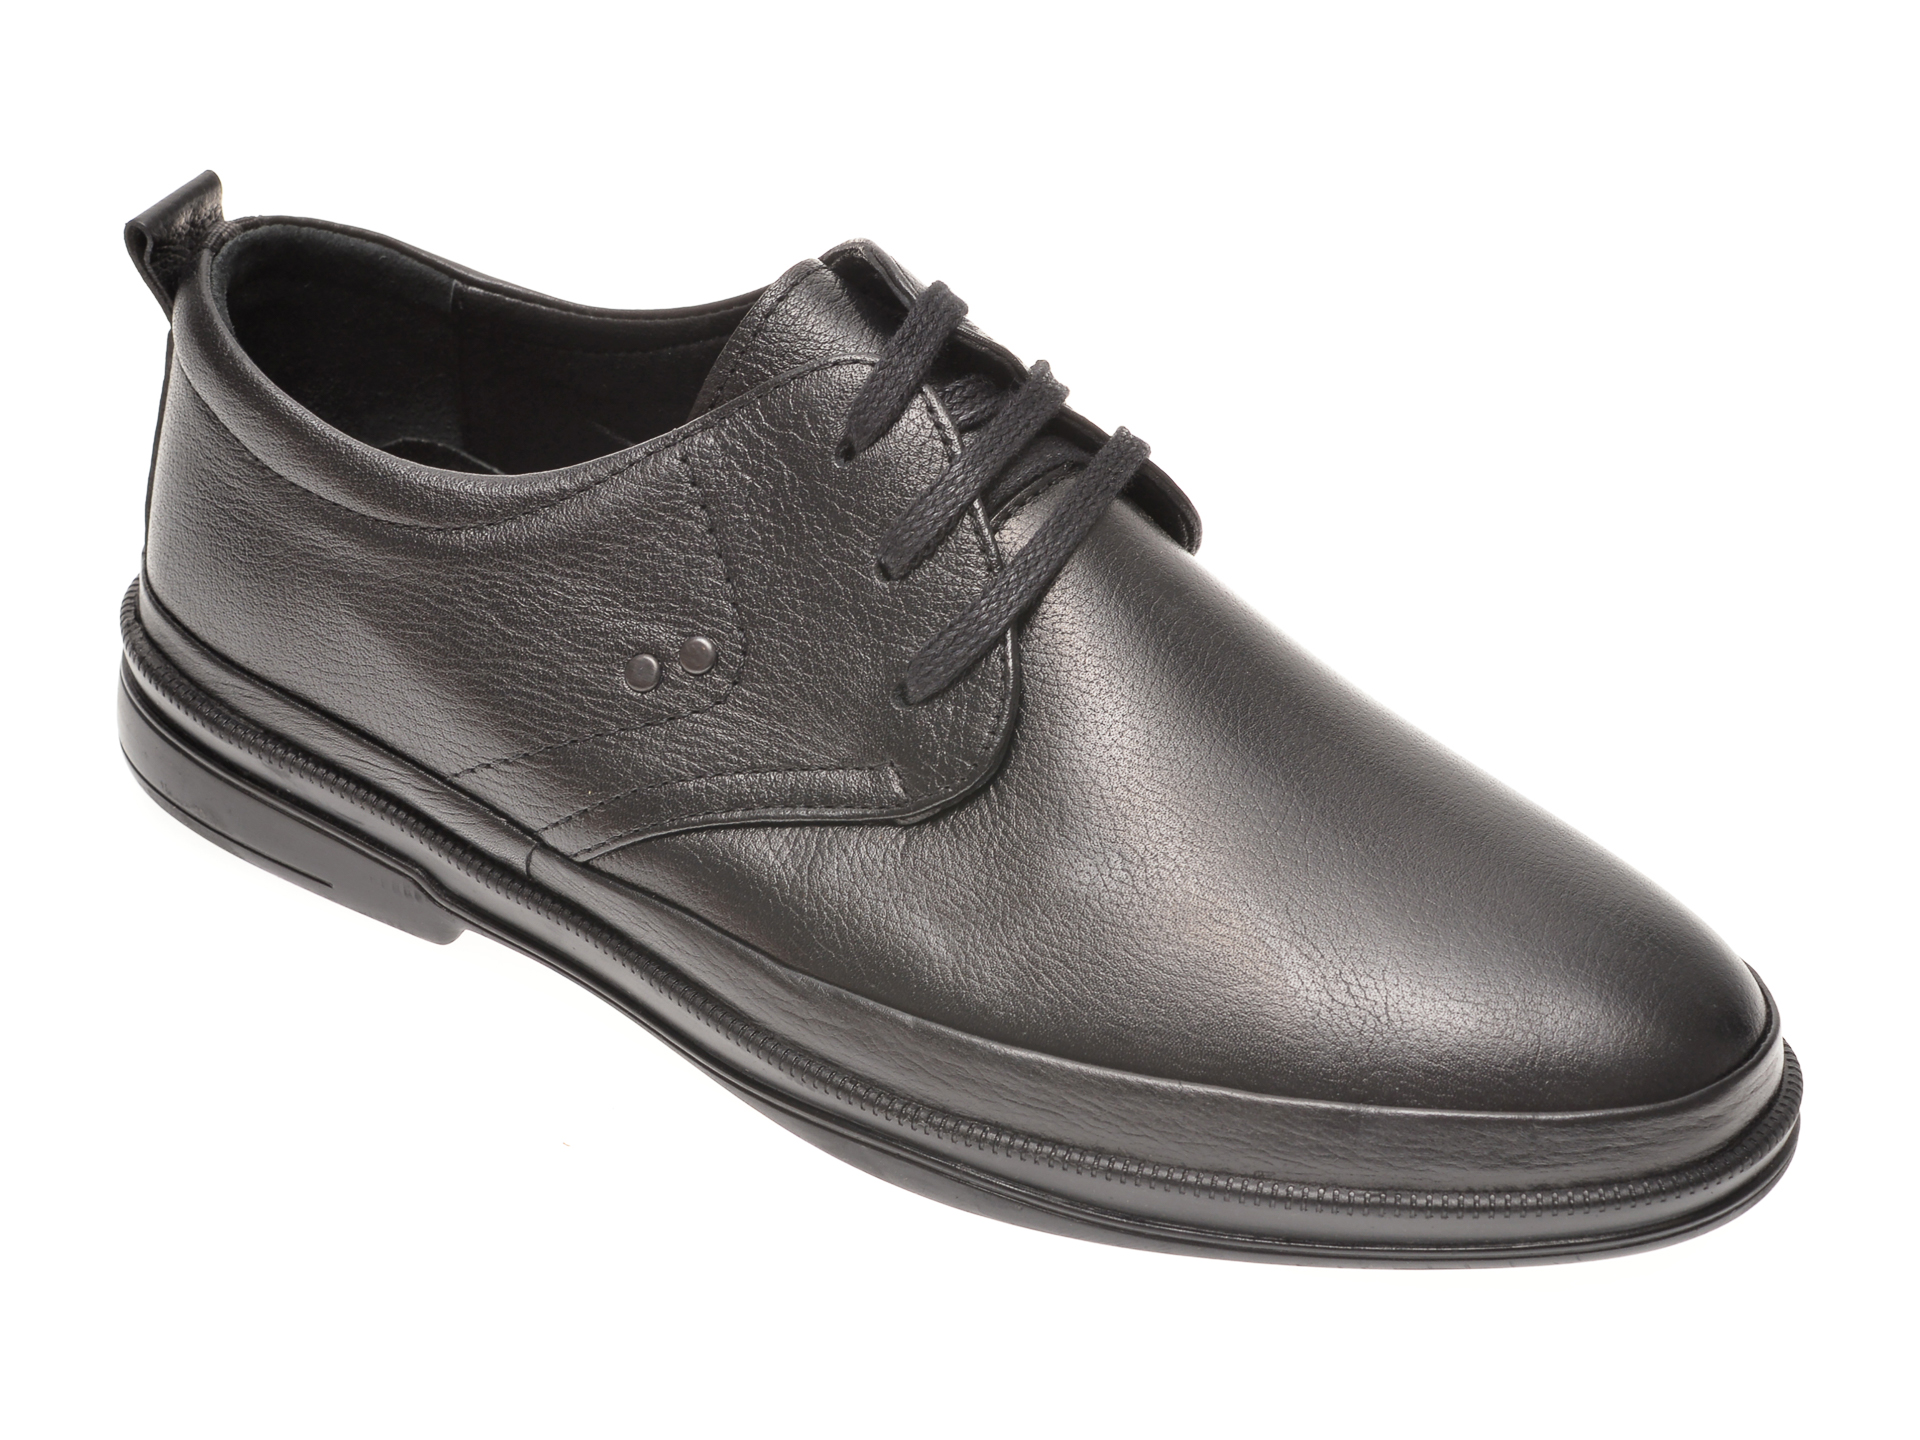 Pantofi OTTER negri, 66402, din piele naturala Otter poza reduceri 2021